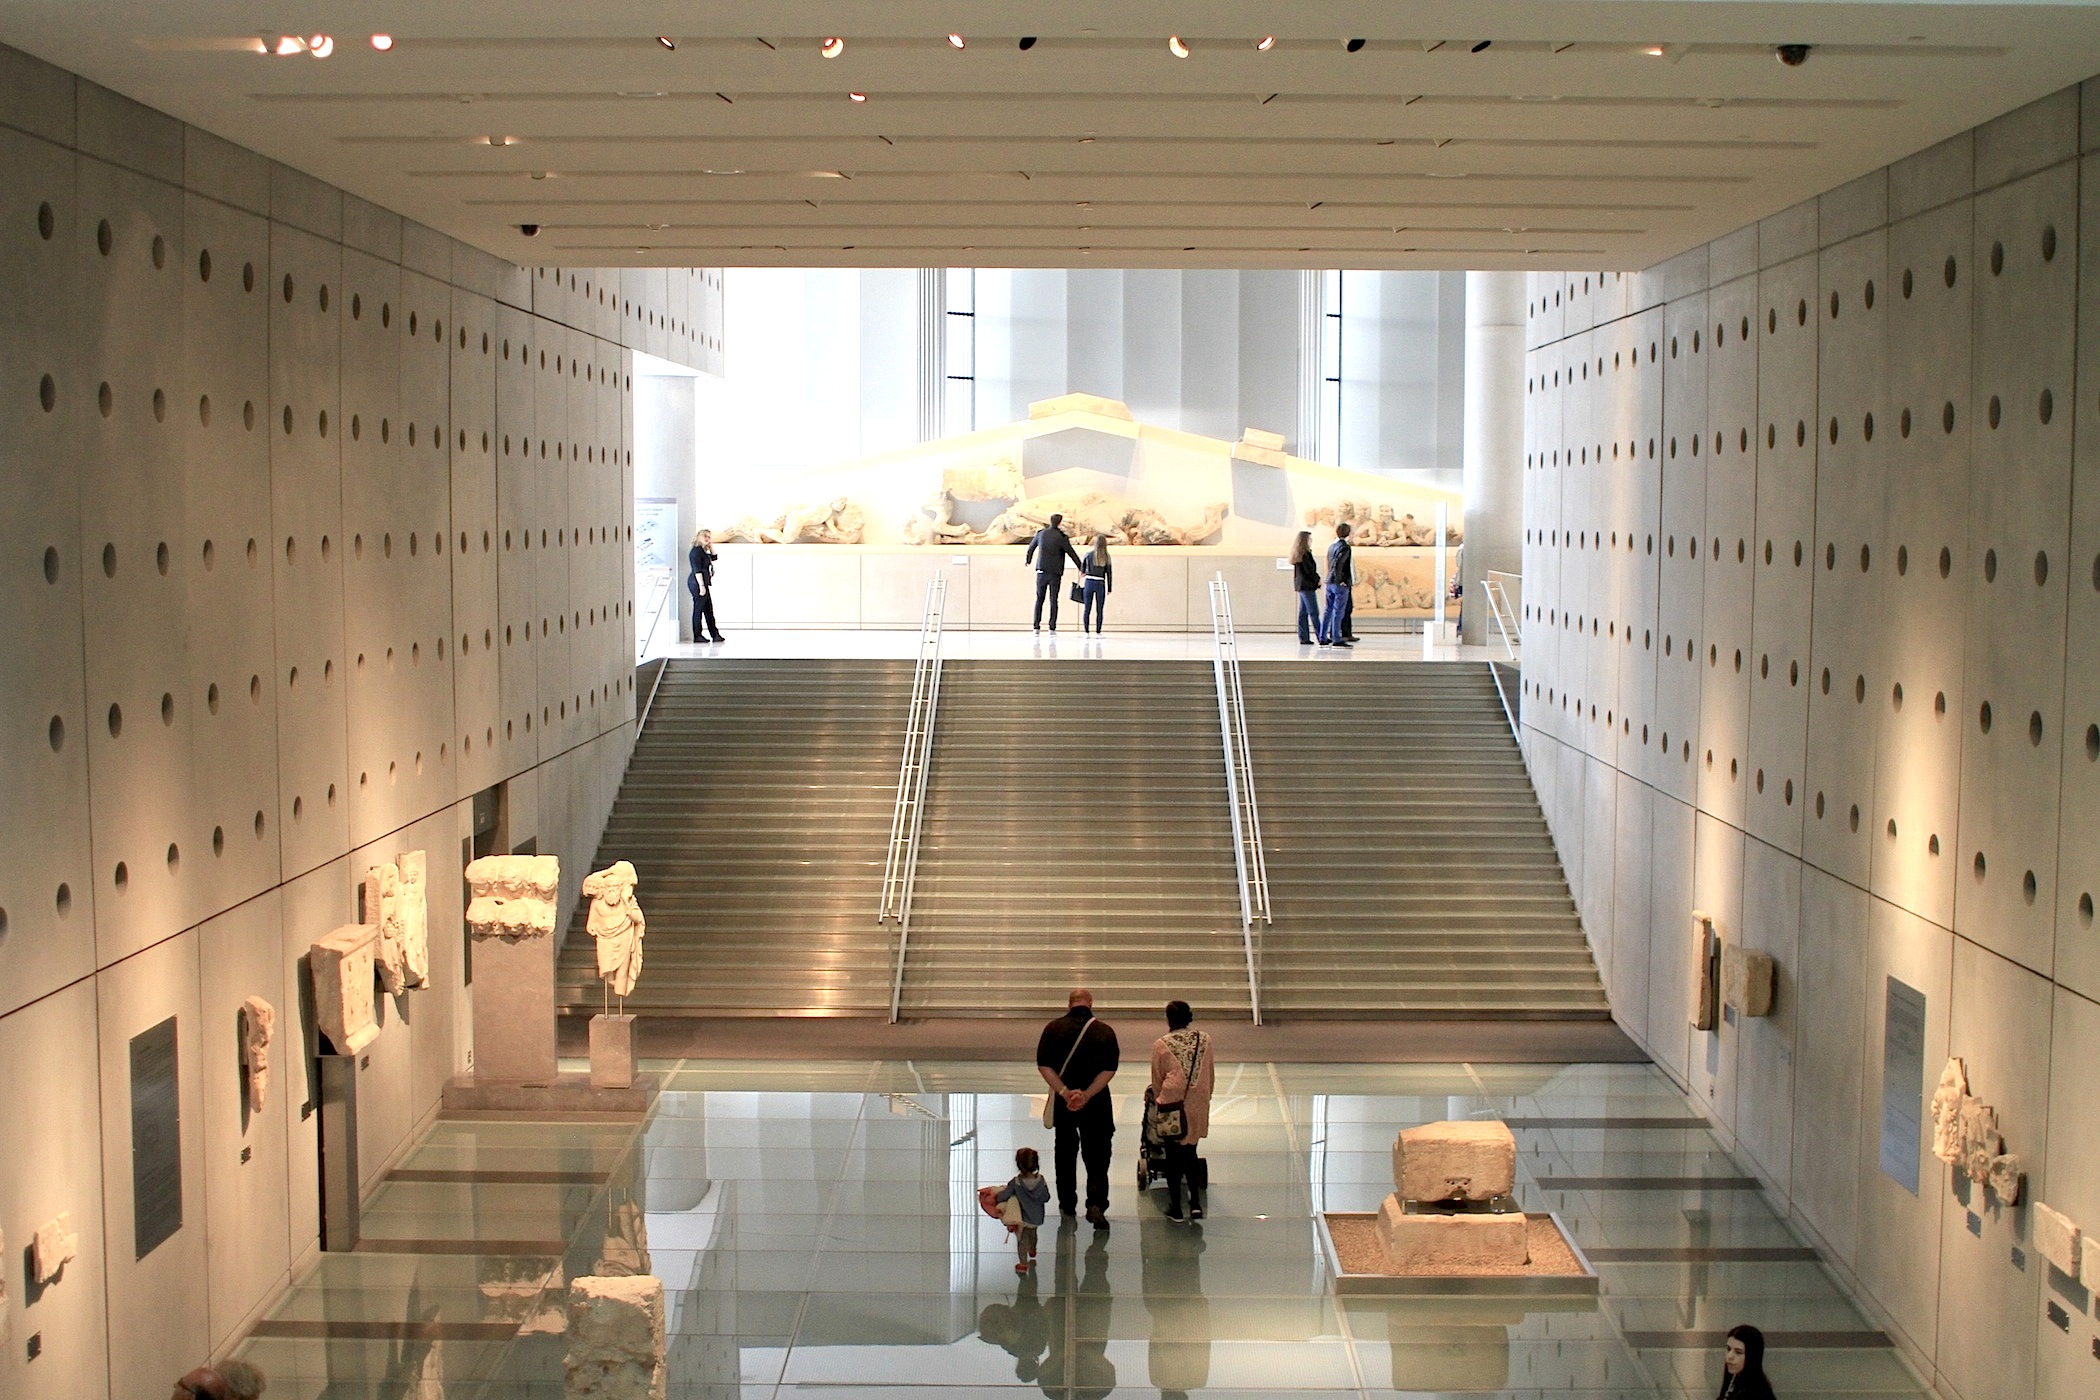 Eine gläserne Rampe und marmorne Freitreppe führt in den oberen Ausstellungssaal. Der Rundgang soll an den beschwerlichen Aufstieg auf den Tempelberg erinnern. Dieses Gefühl wird durch den Wechsel der Raumhöhe von fünf Metern auf das Dreifache verstärkt.